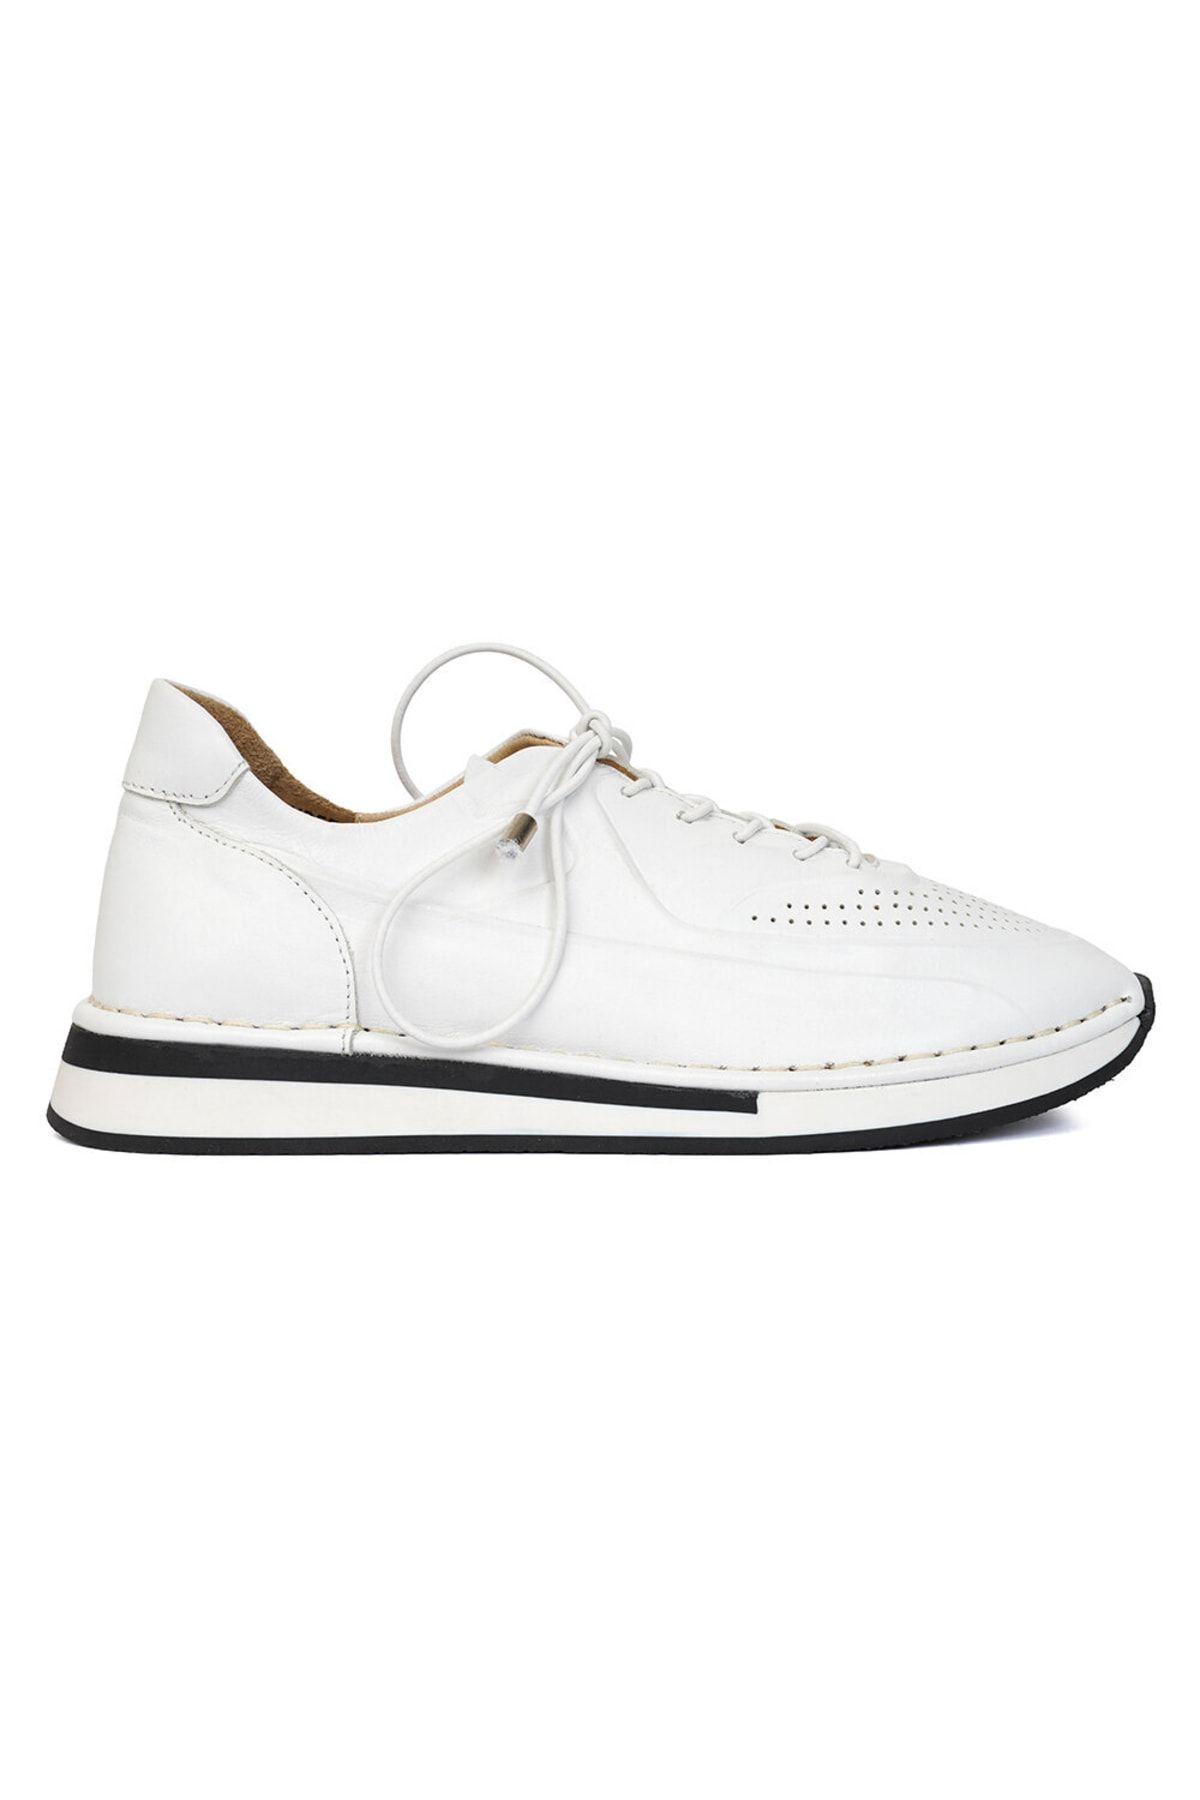 Greyder Kadın Beyaz Hakiki Deri Sneaker Ayakkabı 3y2ua57946